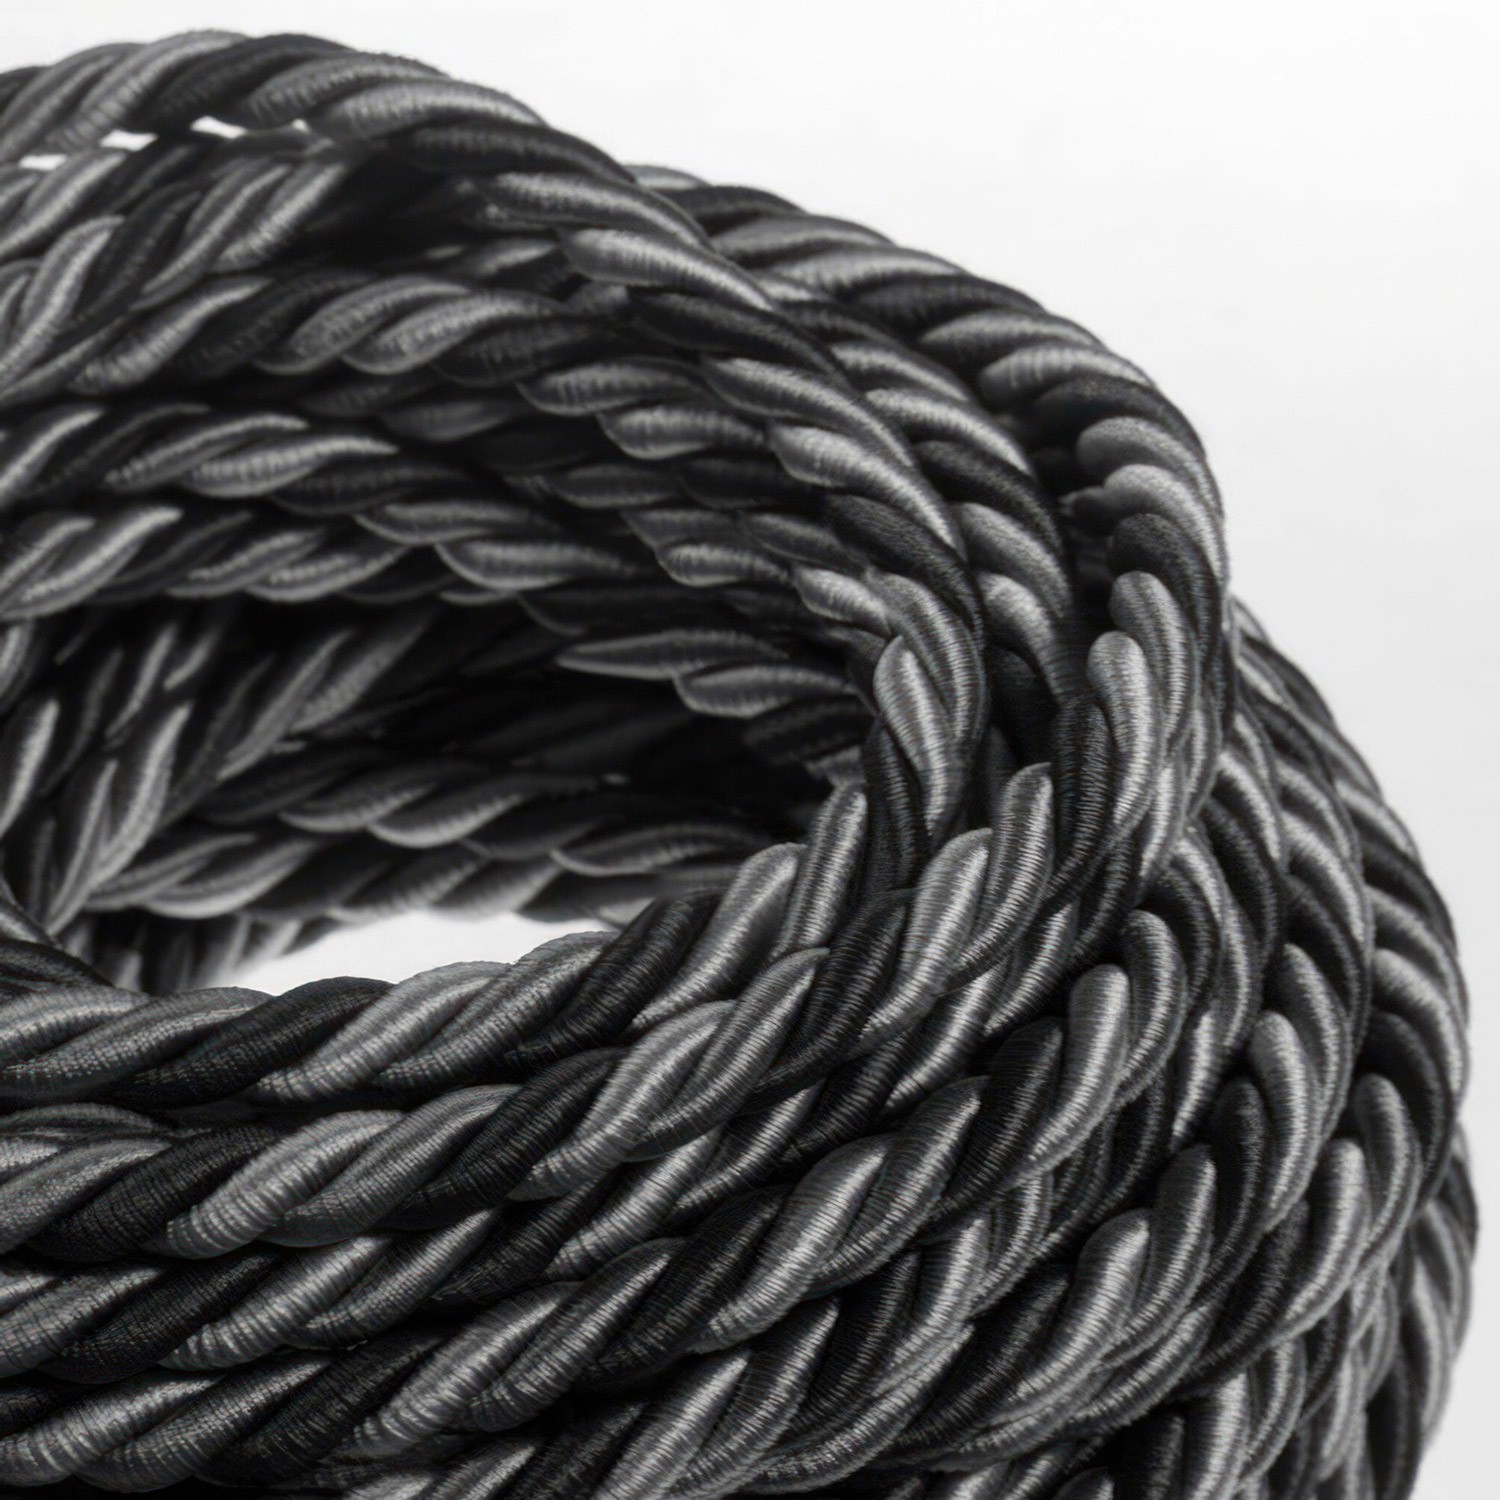 XL Elektrický kabel 3x0,75 potažený lesklou šedou hedvábní textilií Orleans. Průměr 16 mm.